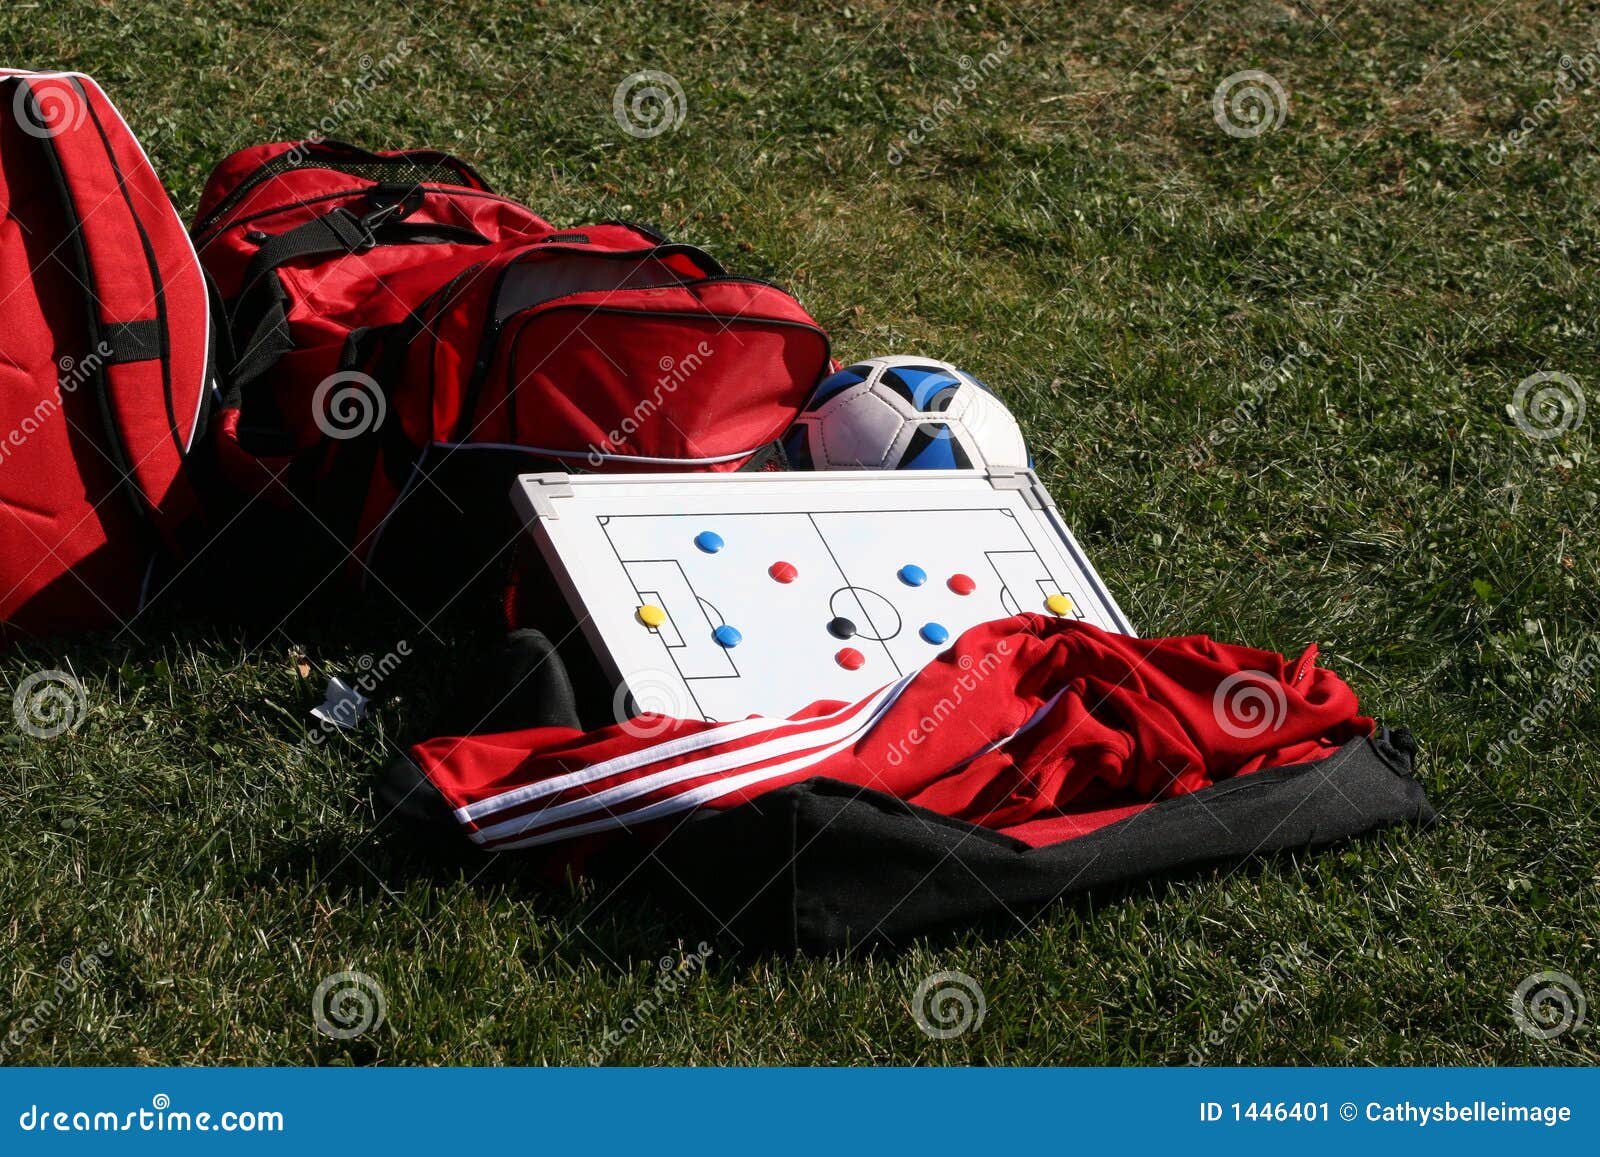 Het toestel van het voetbal. Rode duffel sportzak, jasje met voetbalbal en tactiekraad